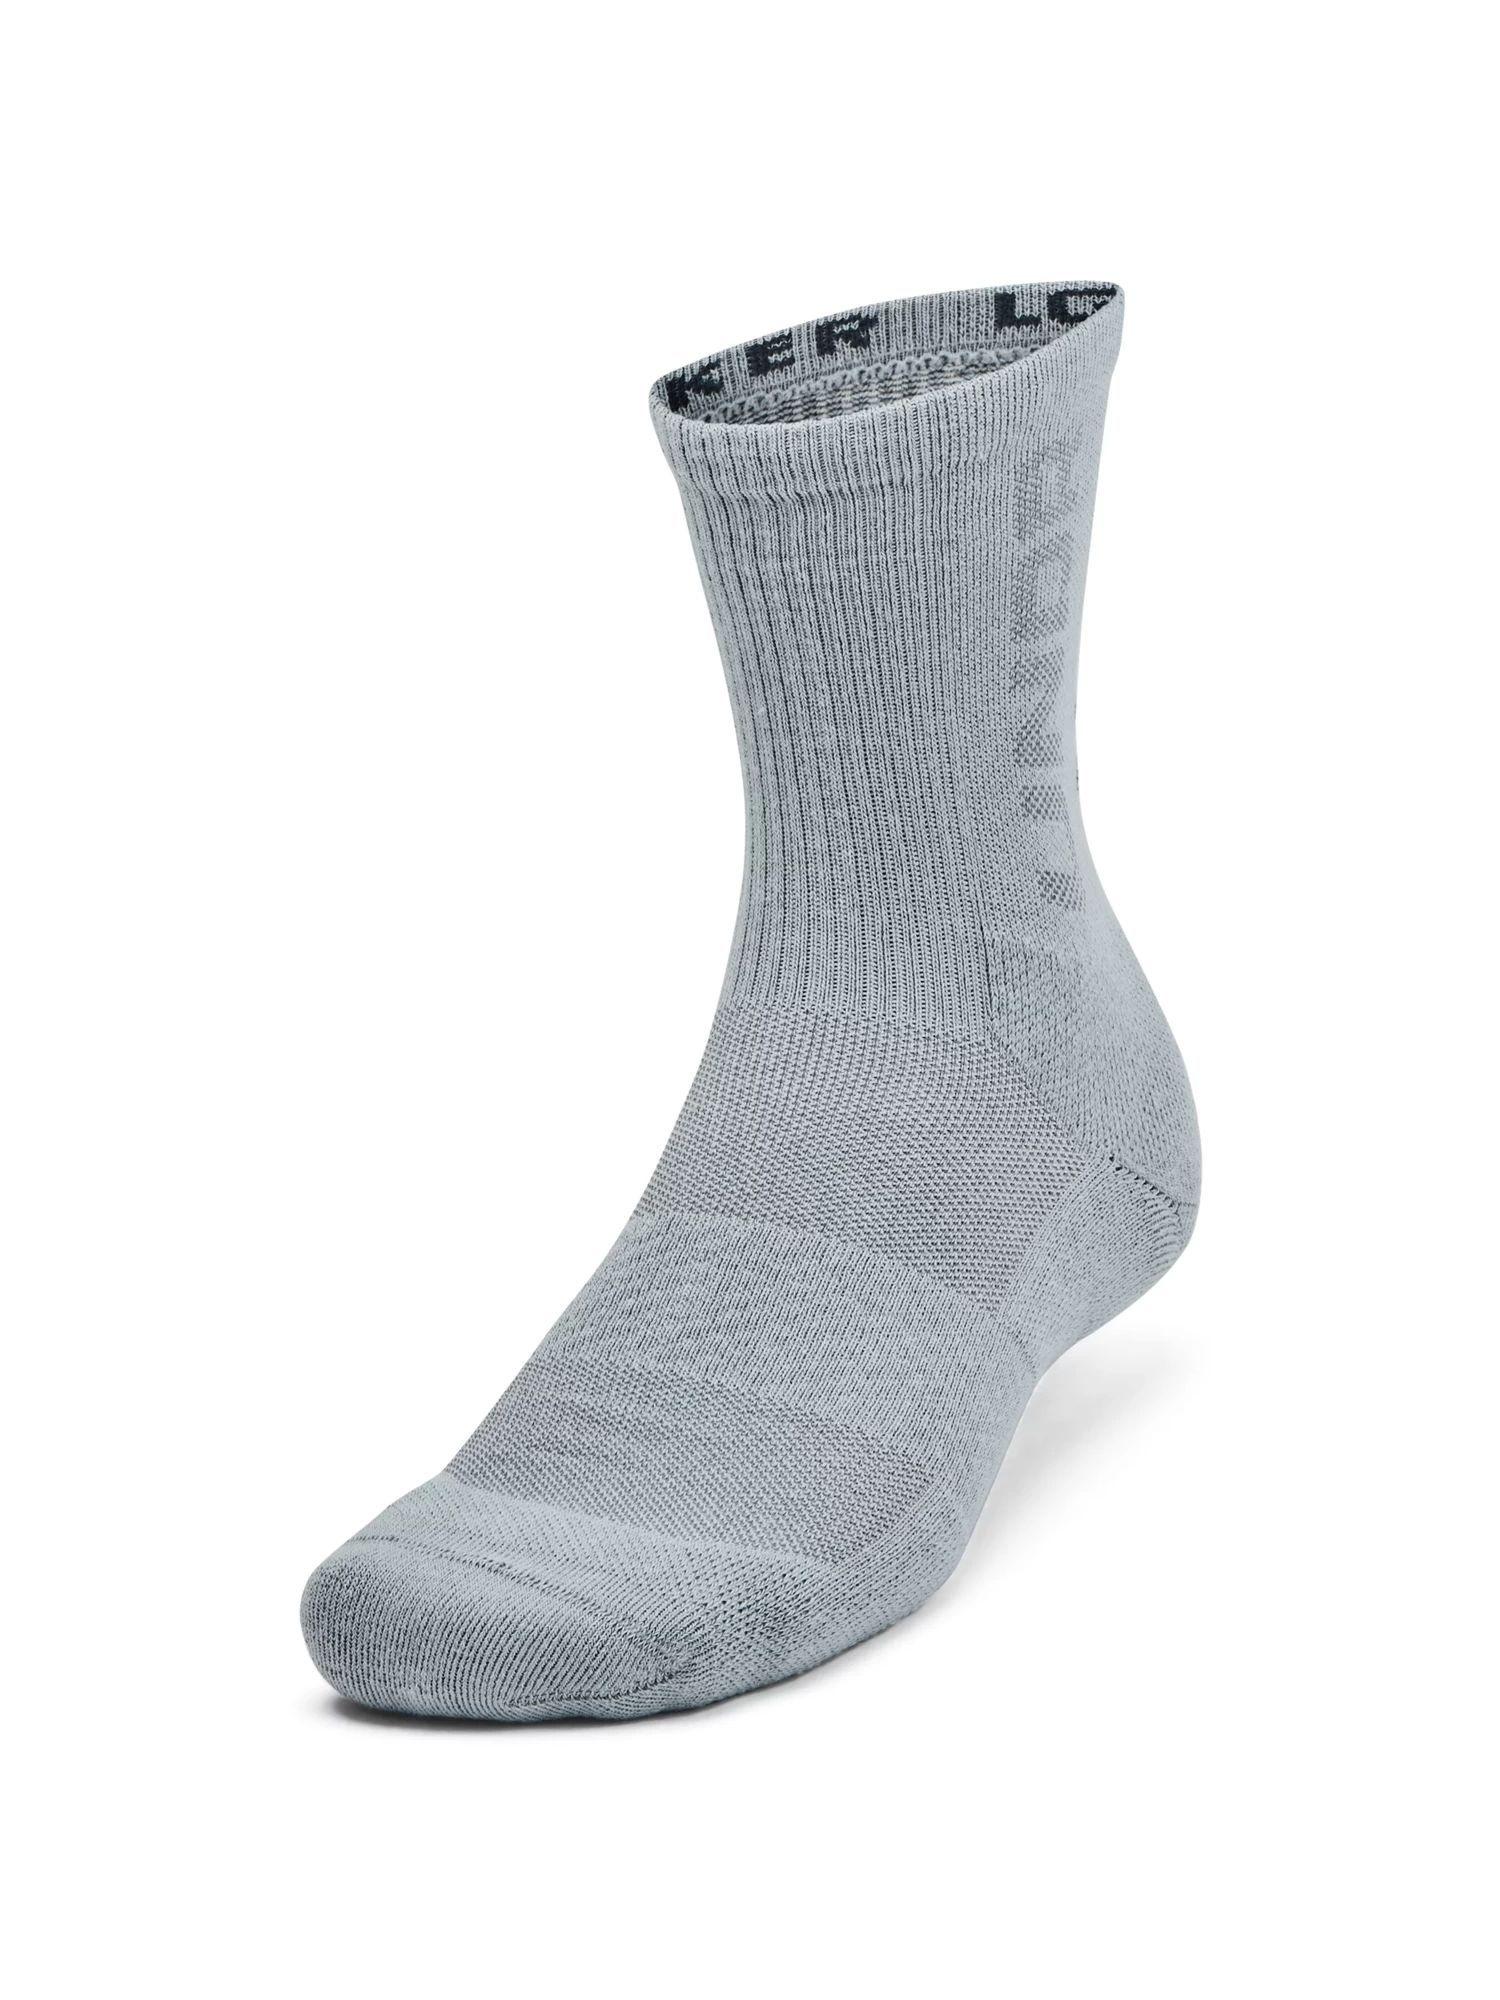 unisex maker mid crew socks - grey (pack of 3)